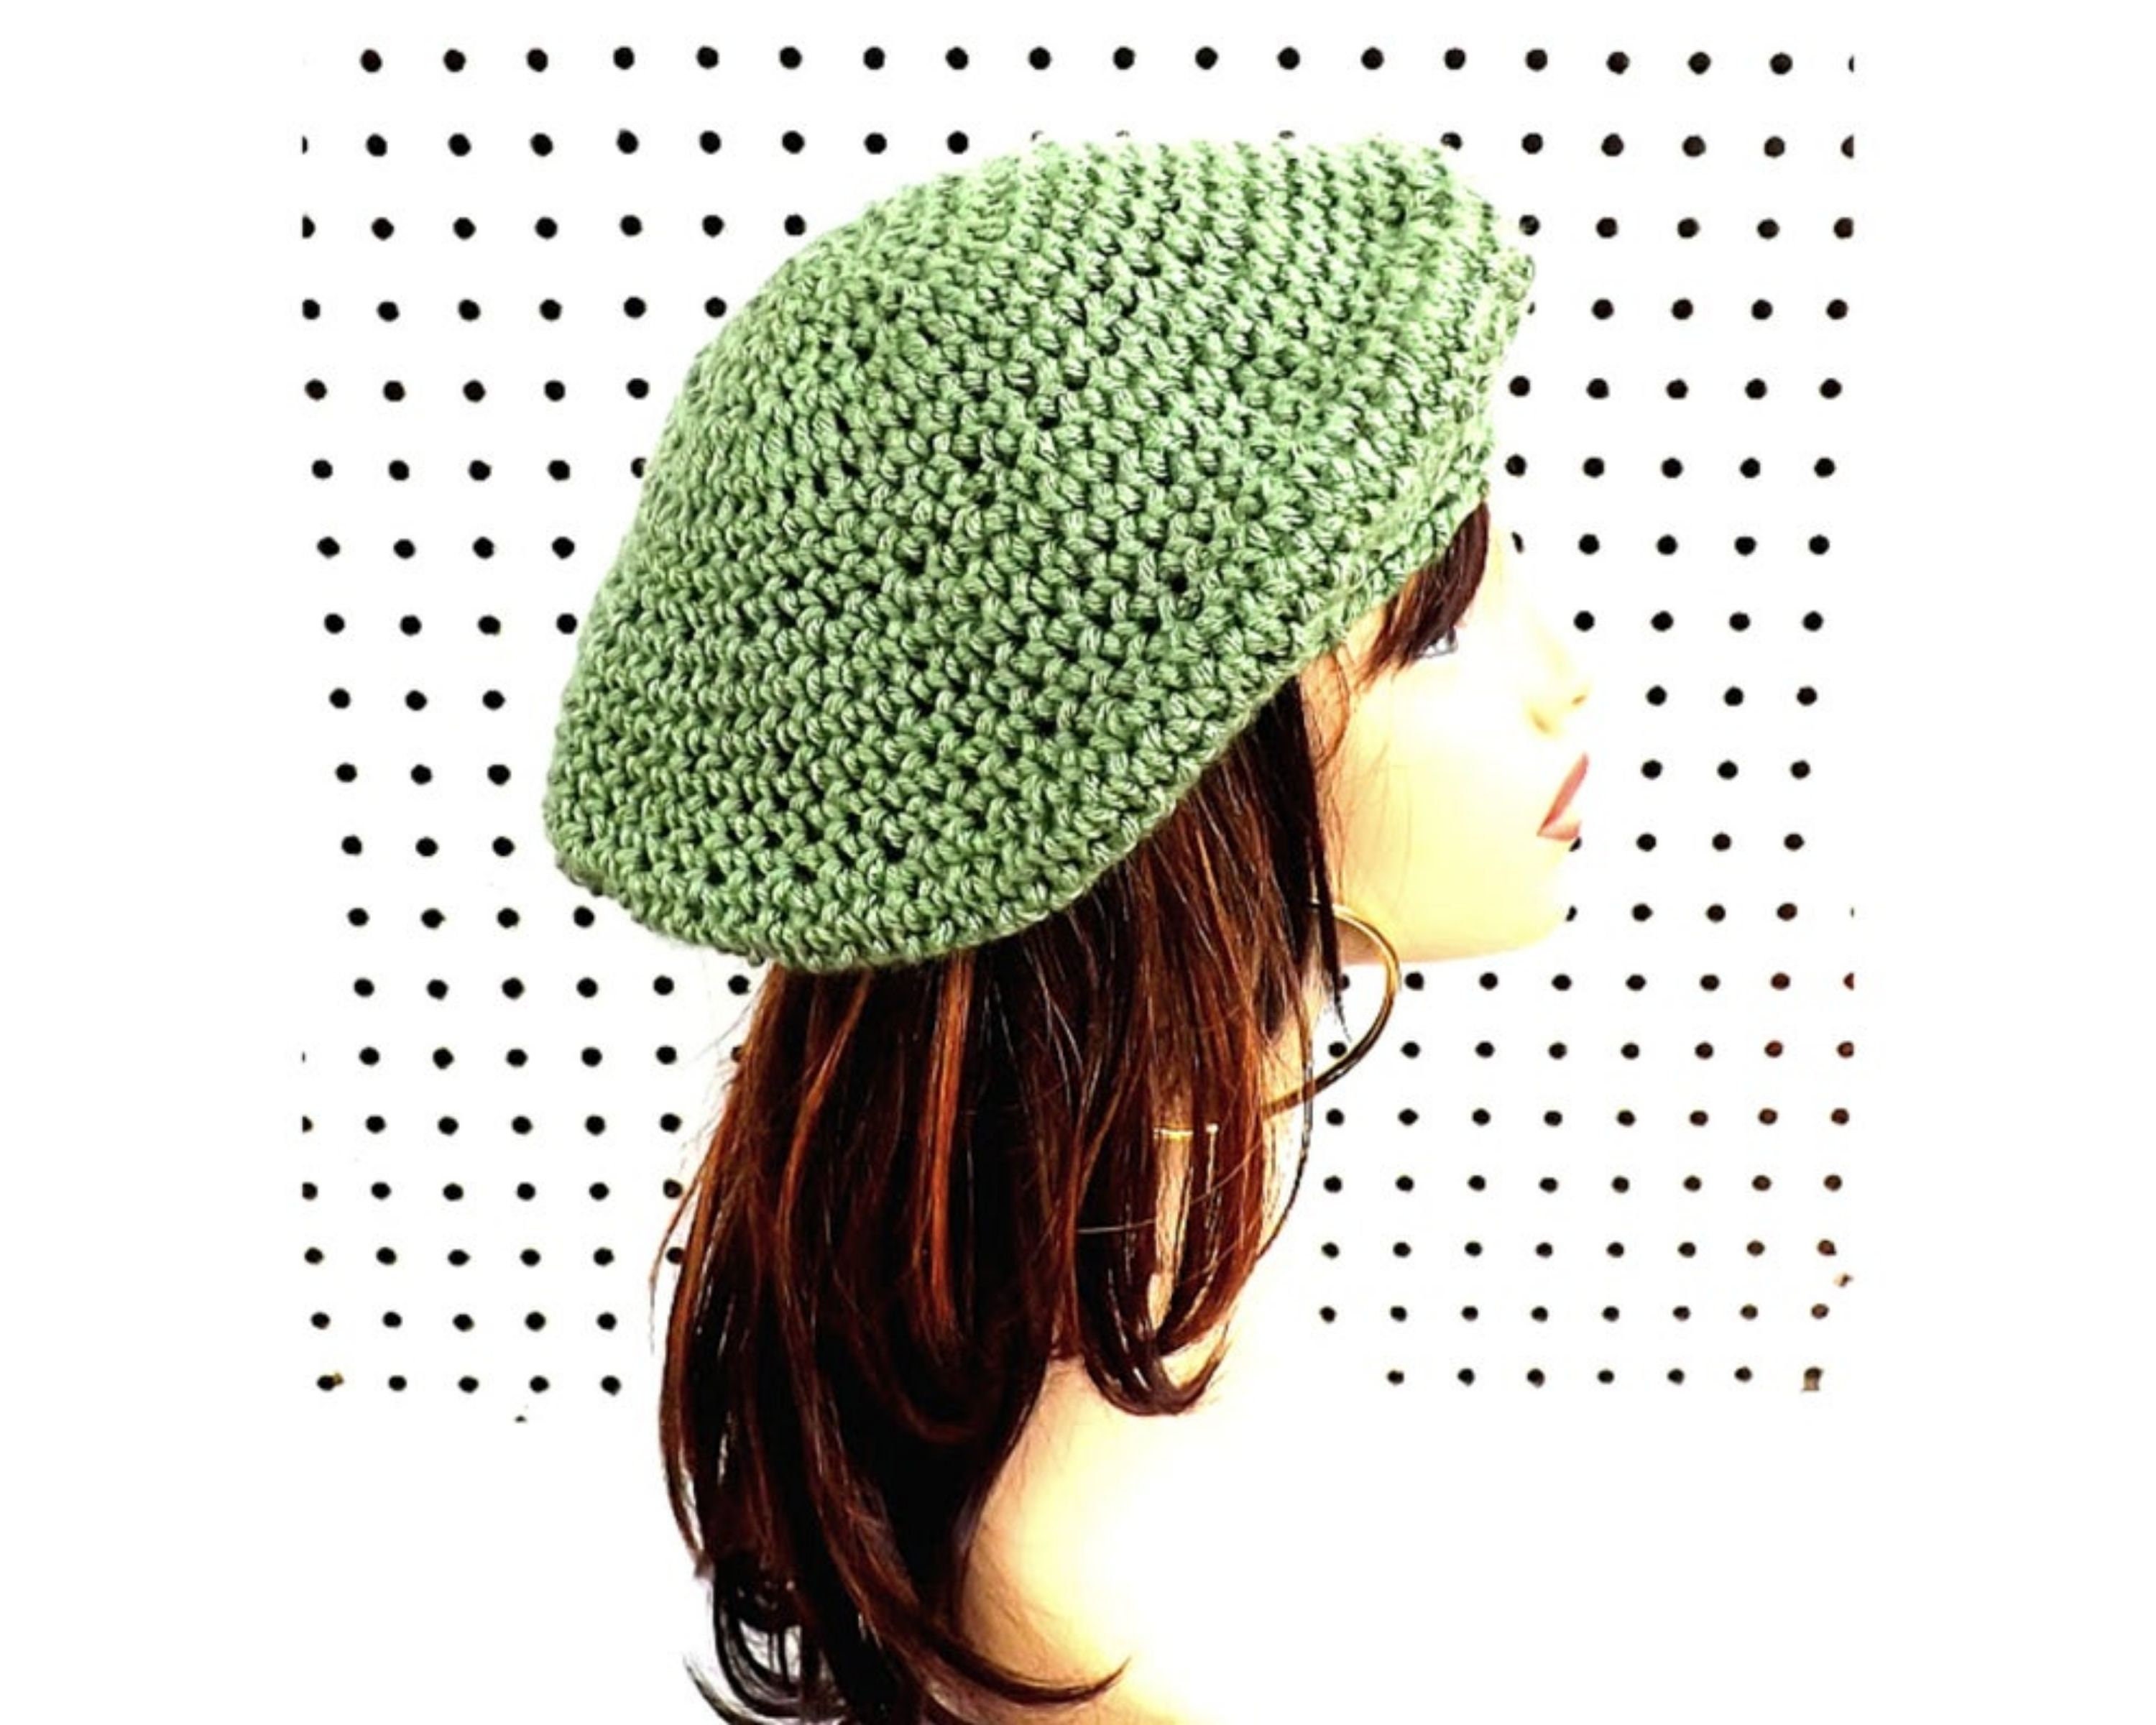 Beret crochet pattern Crochet hat pattern women Womens hat pattern Beret for woman